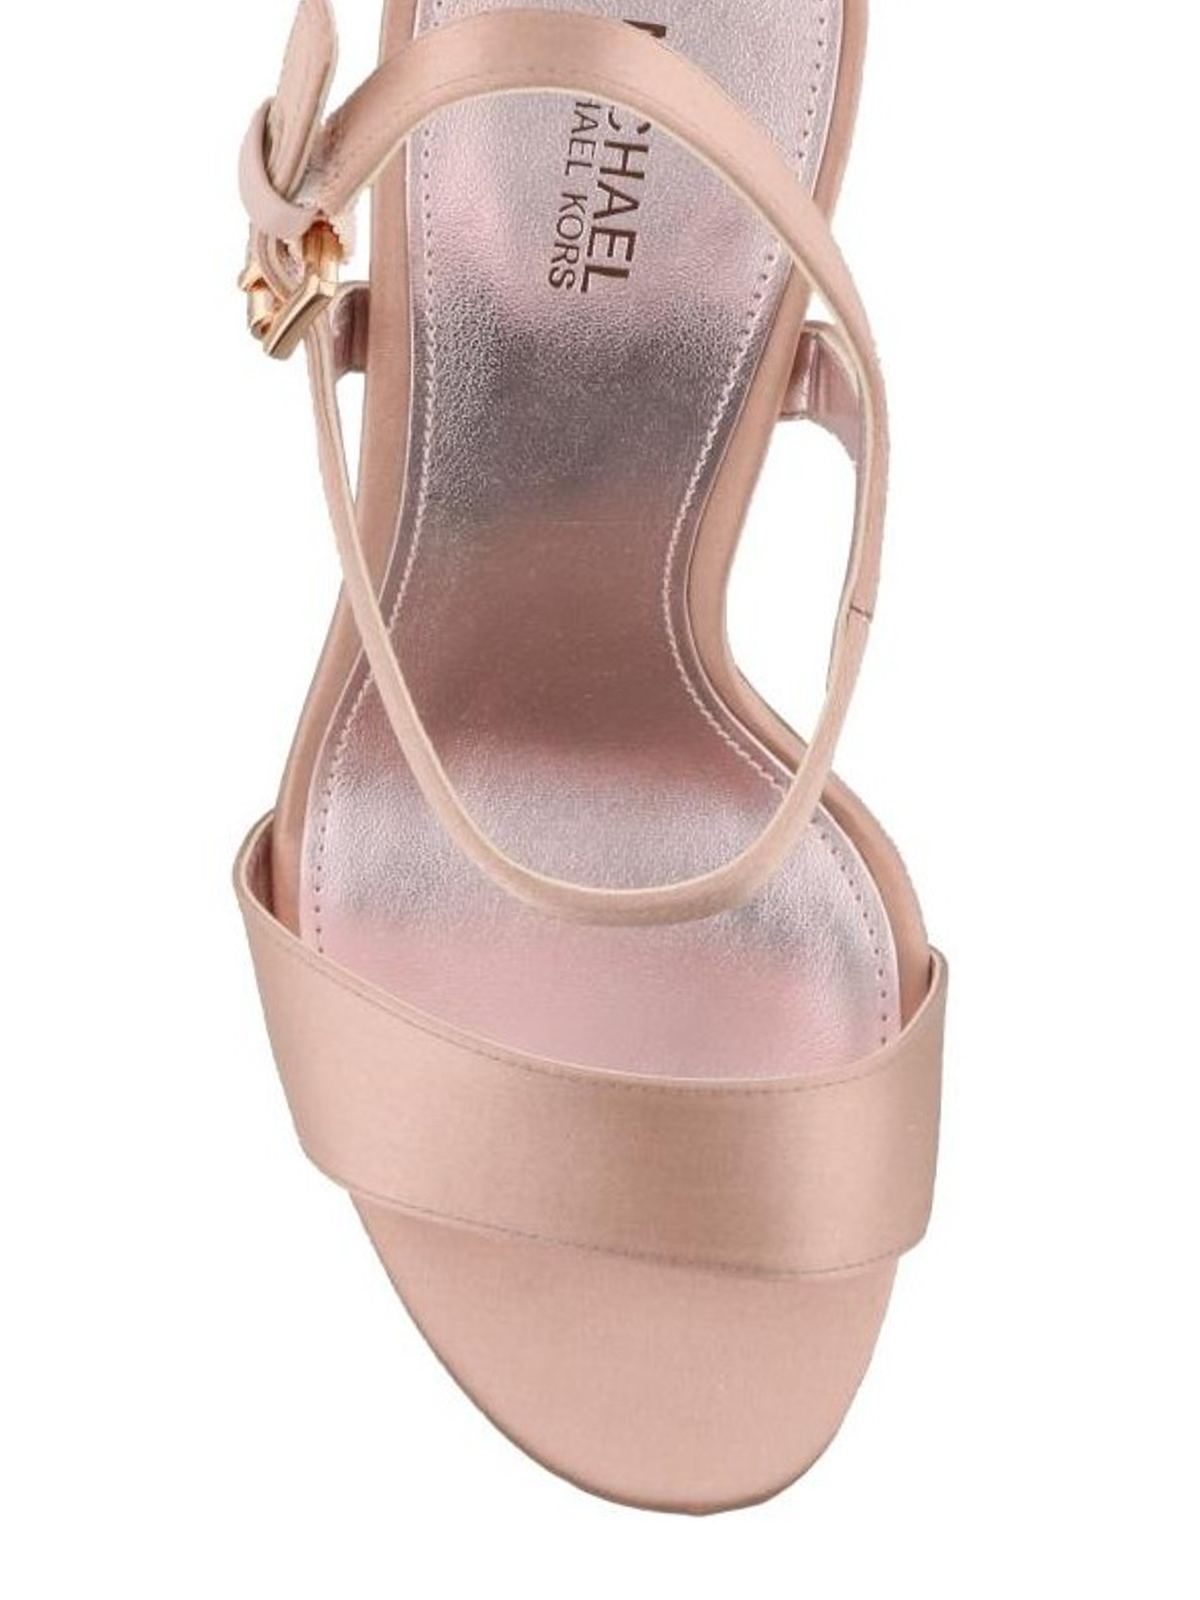 Sandals Michael Kors - Tori glitter heel pink sandals - 40S8TOHA1D187